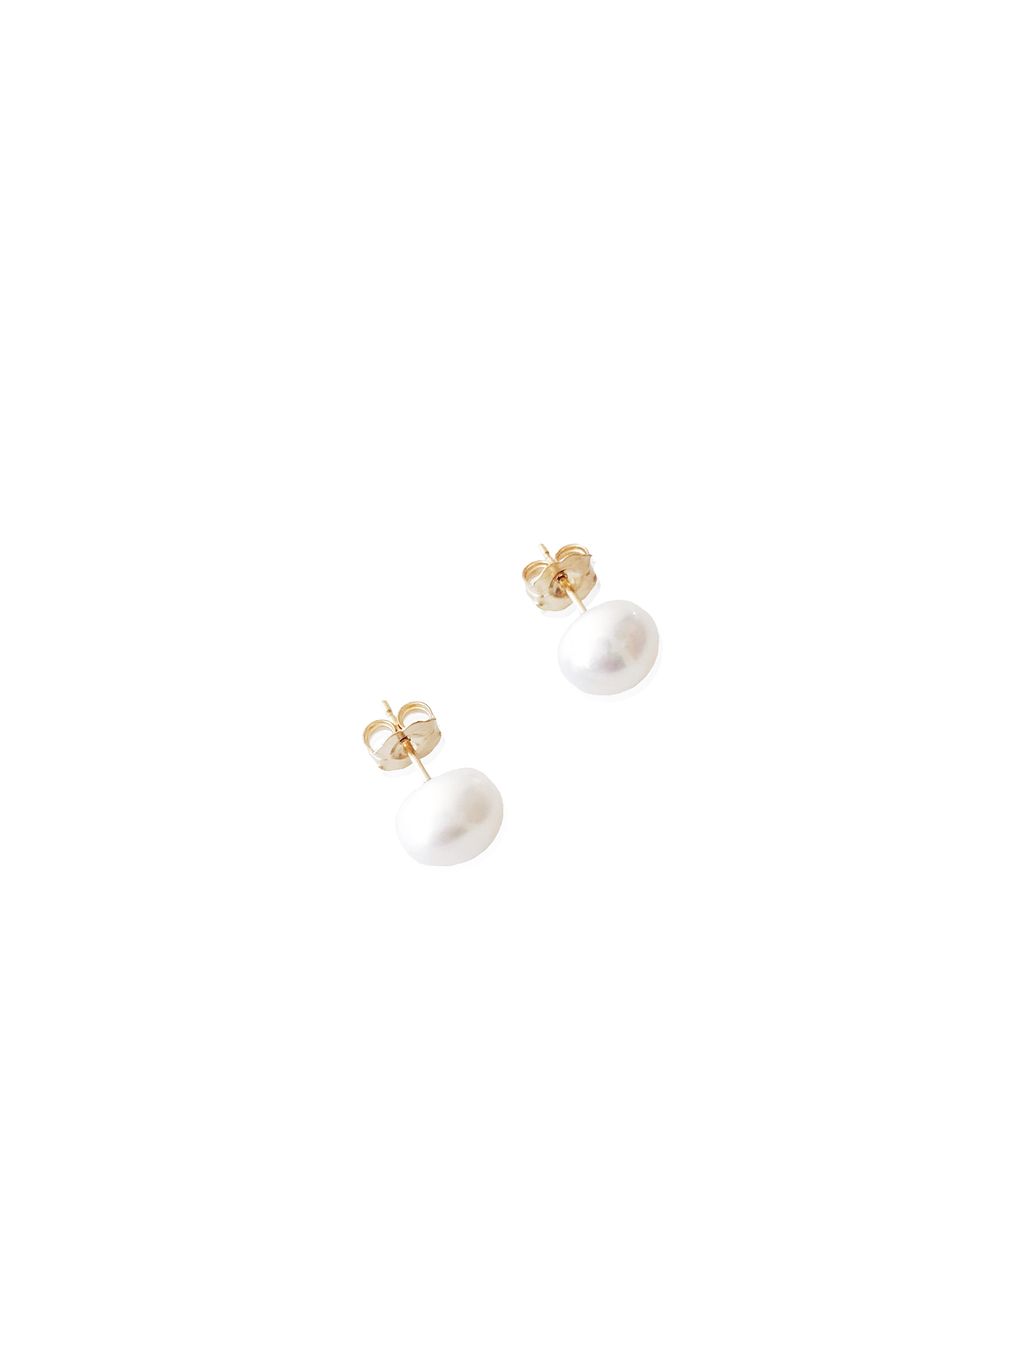 Pearl Earrings Gold.jpg